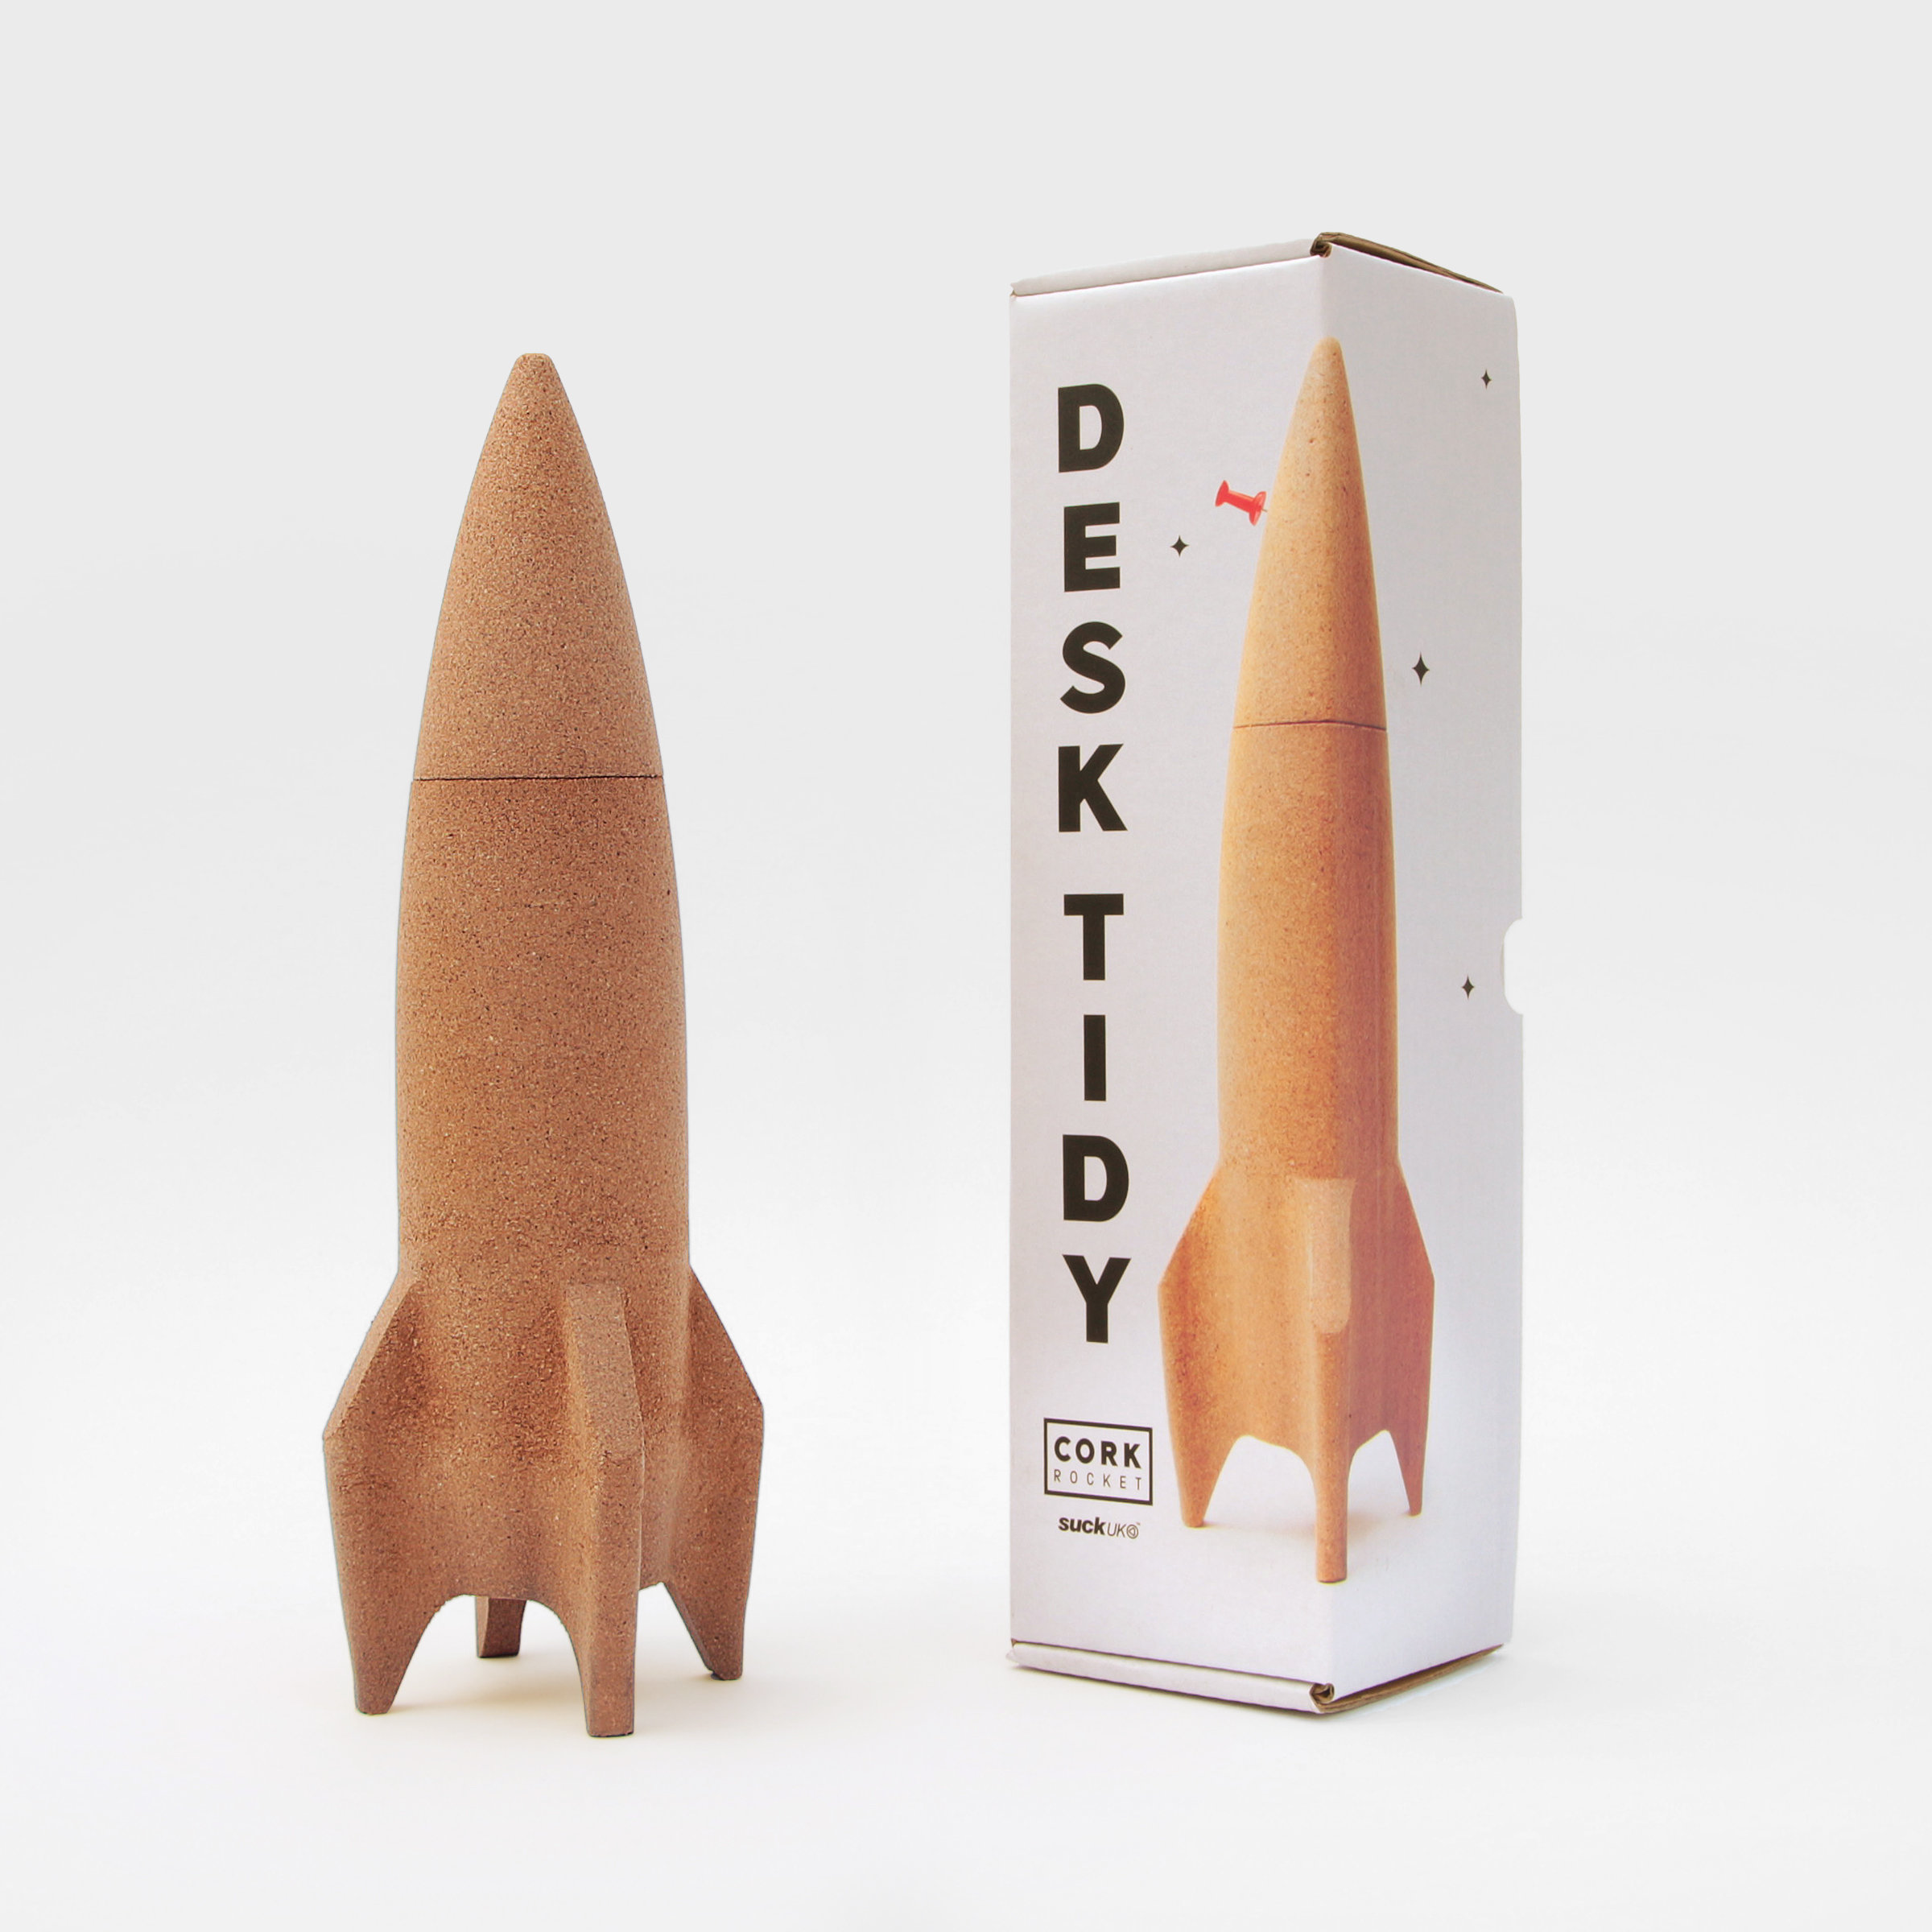 Rocket Desk Tidy Packaging